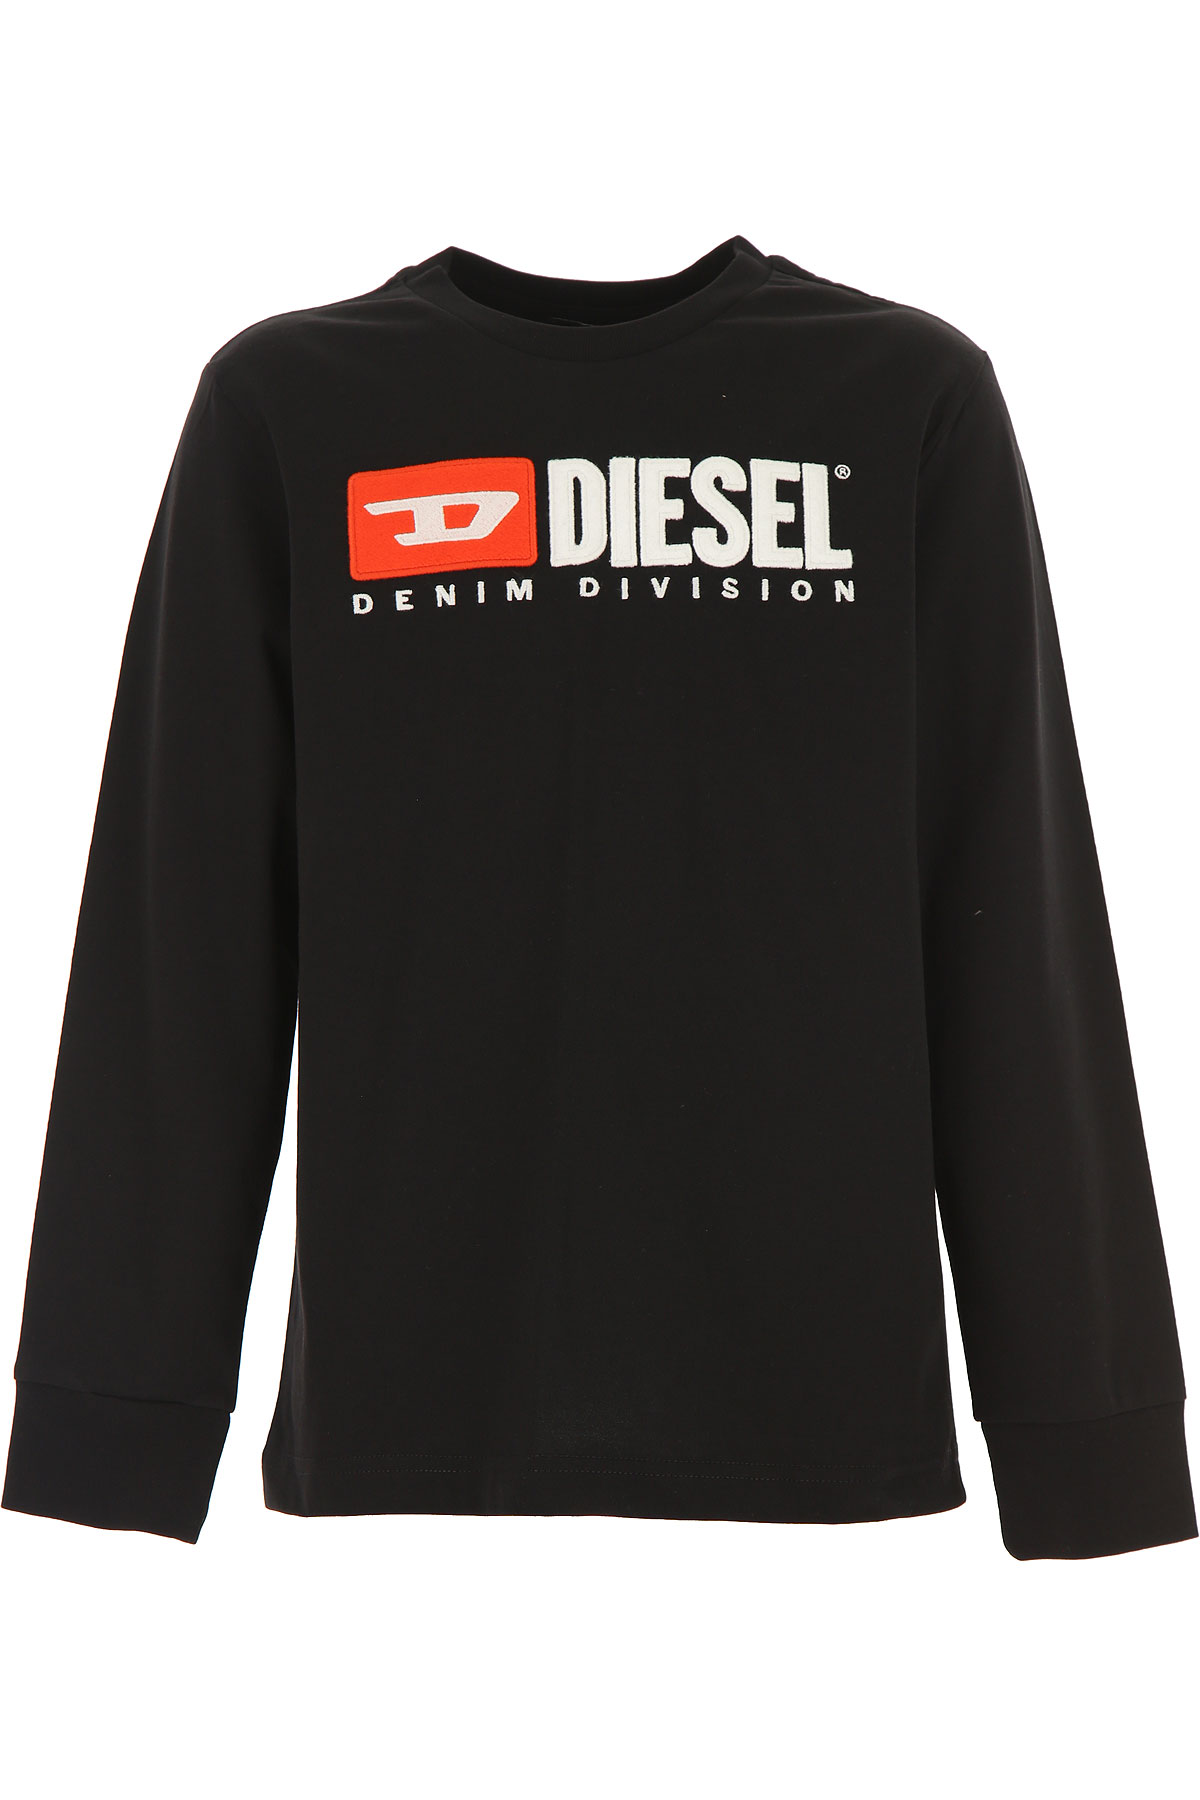 Diesel Kinder T-Shirt für Jungen Günstig im Sale, Schwarz, Baumwolle, 2017, 10Y 14Y 16Y 8Y